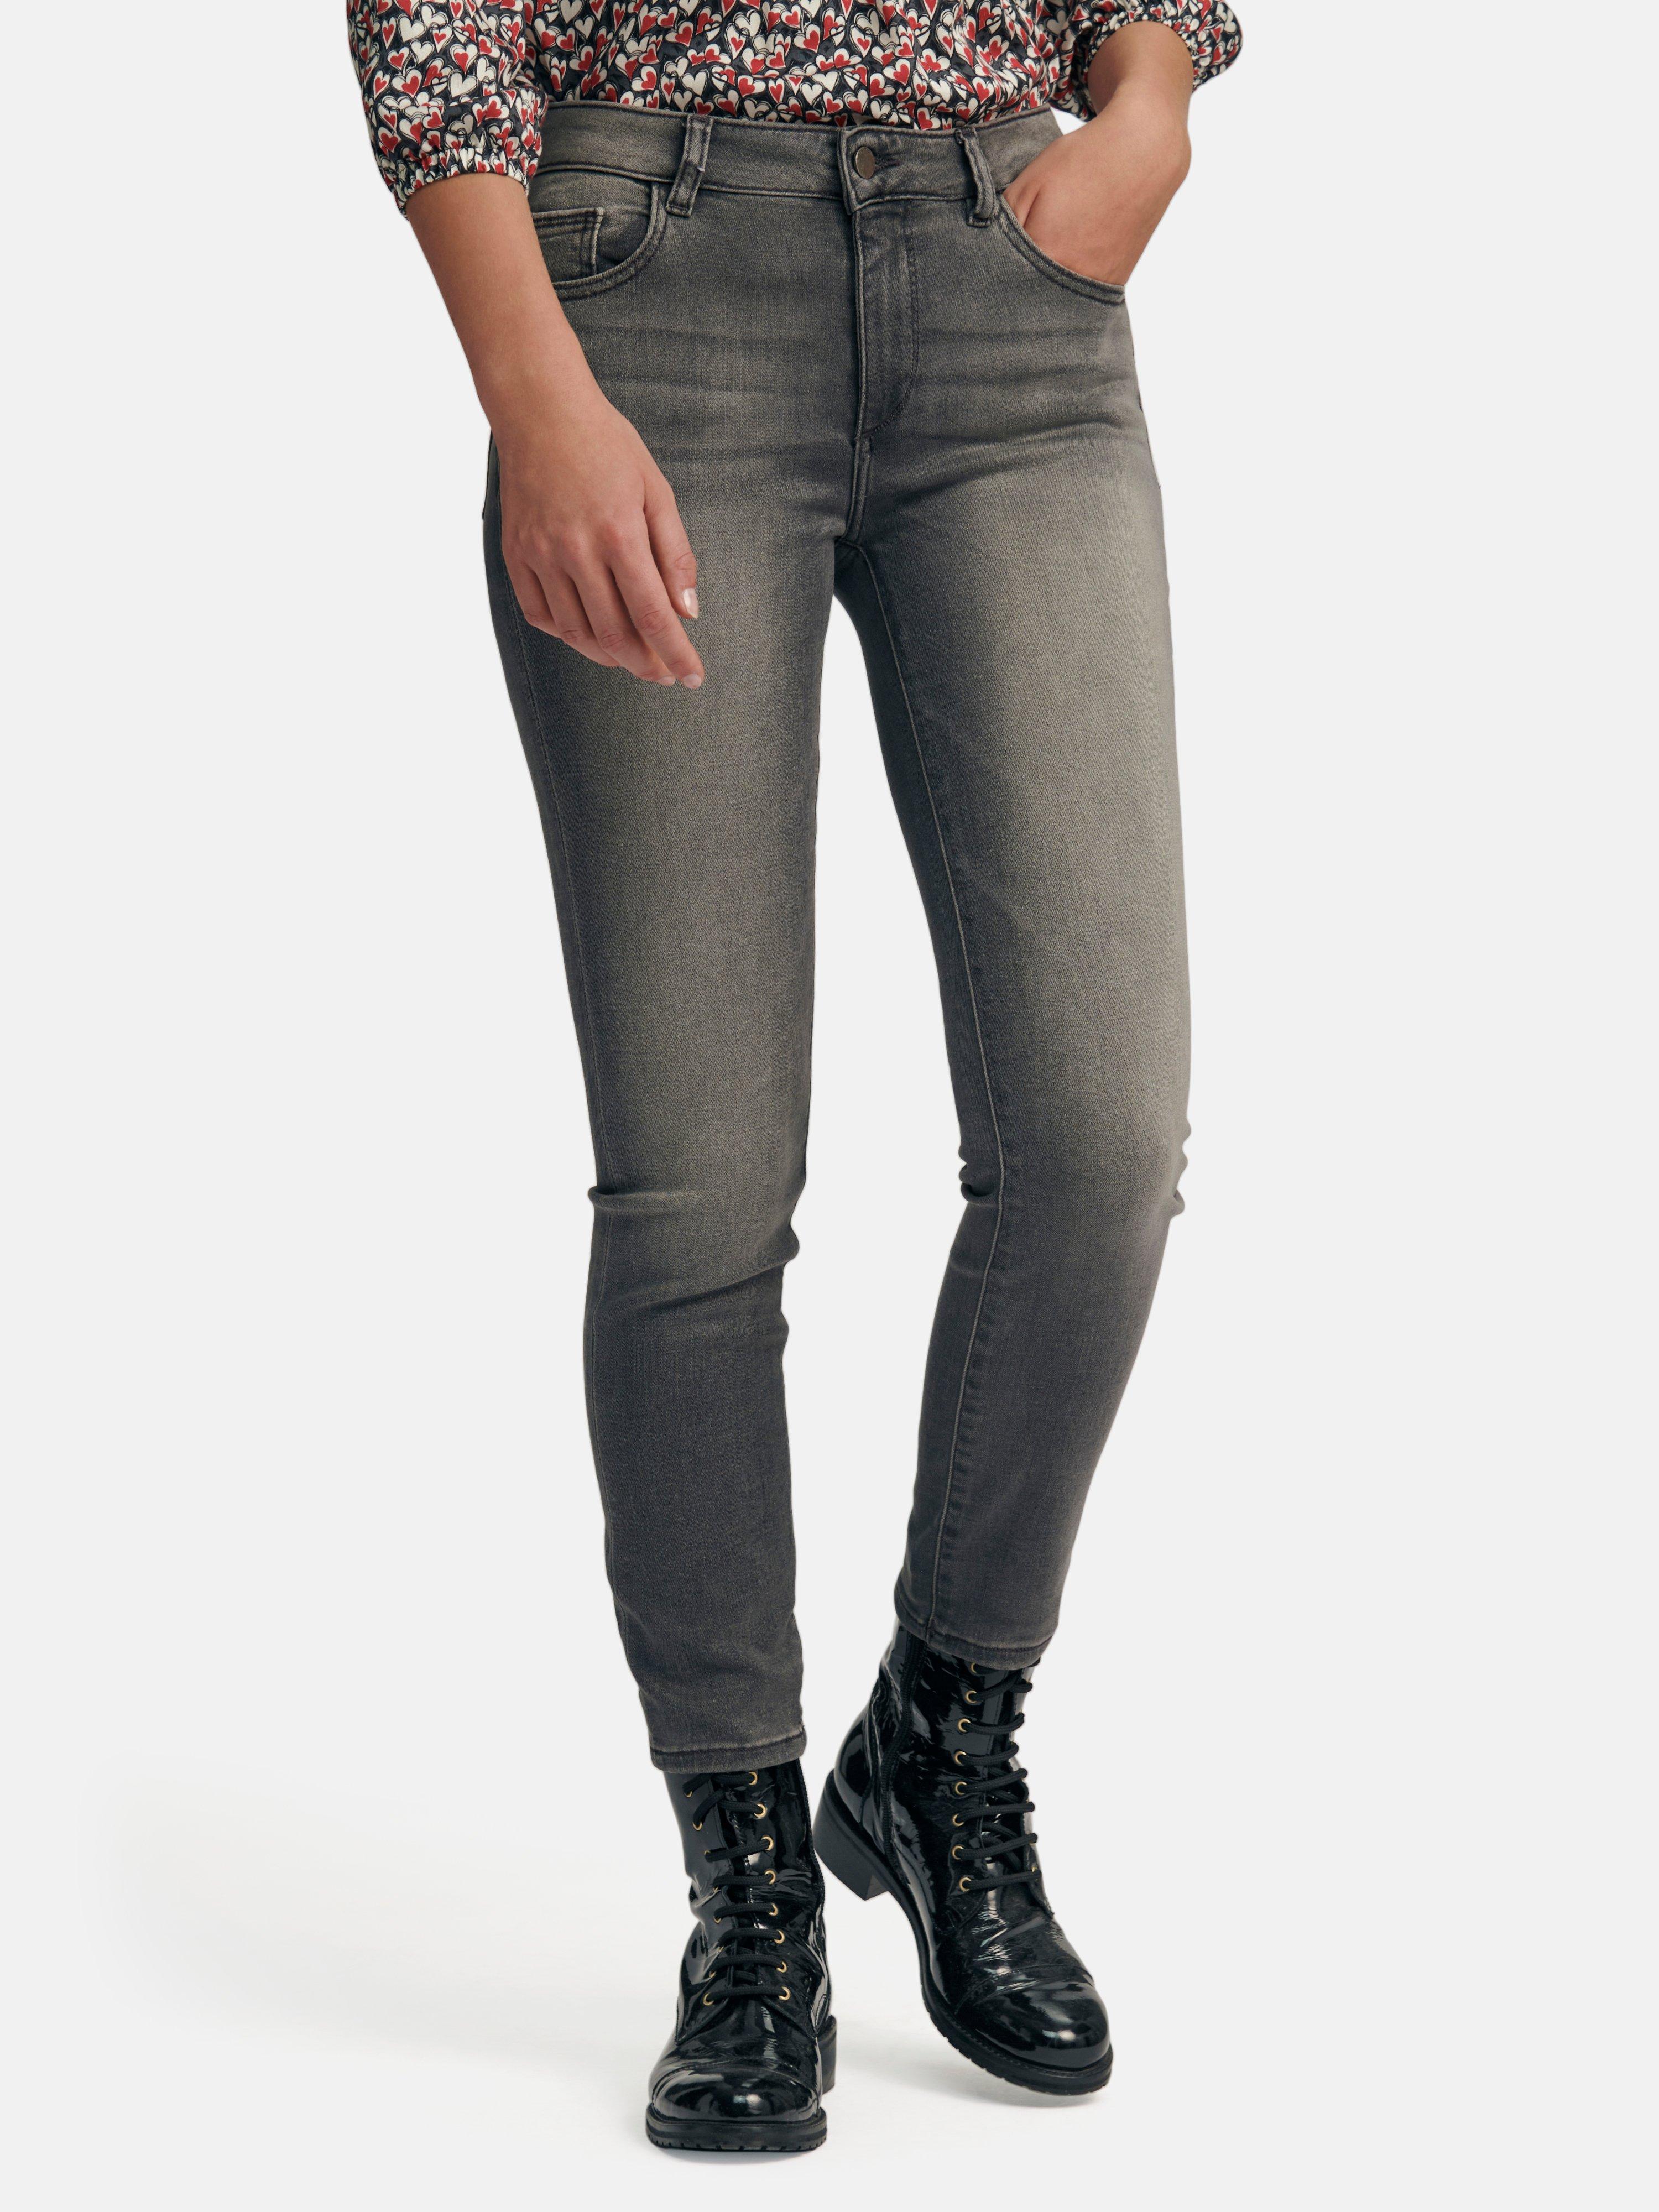 DL1961 - Knöchellange 7/8-Jeans Modell Florence